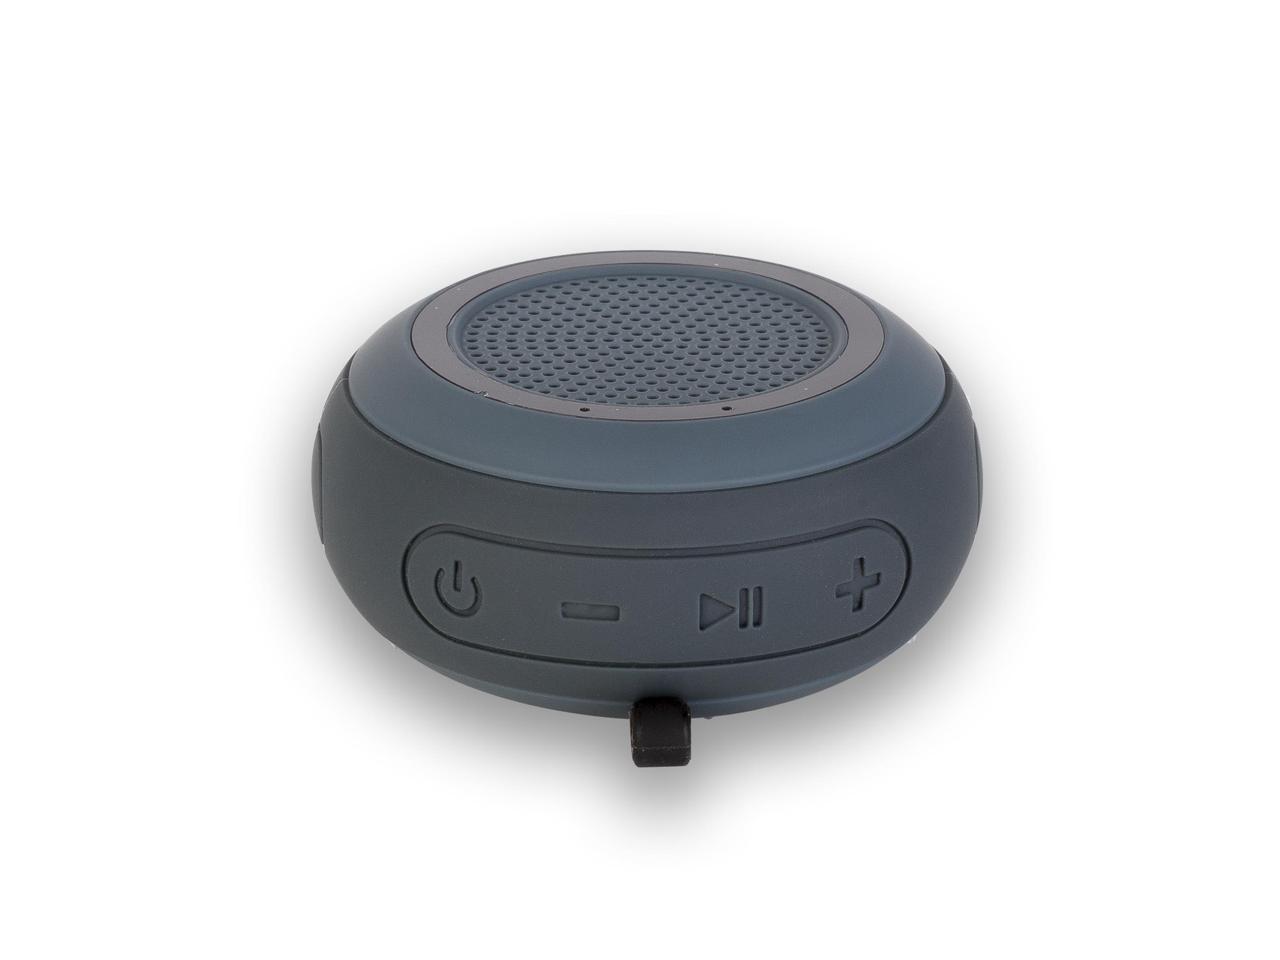 NGS Roller Creek 10W Waterproof Bluetooth Speaker - Black